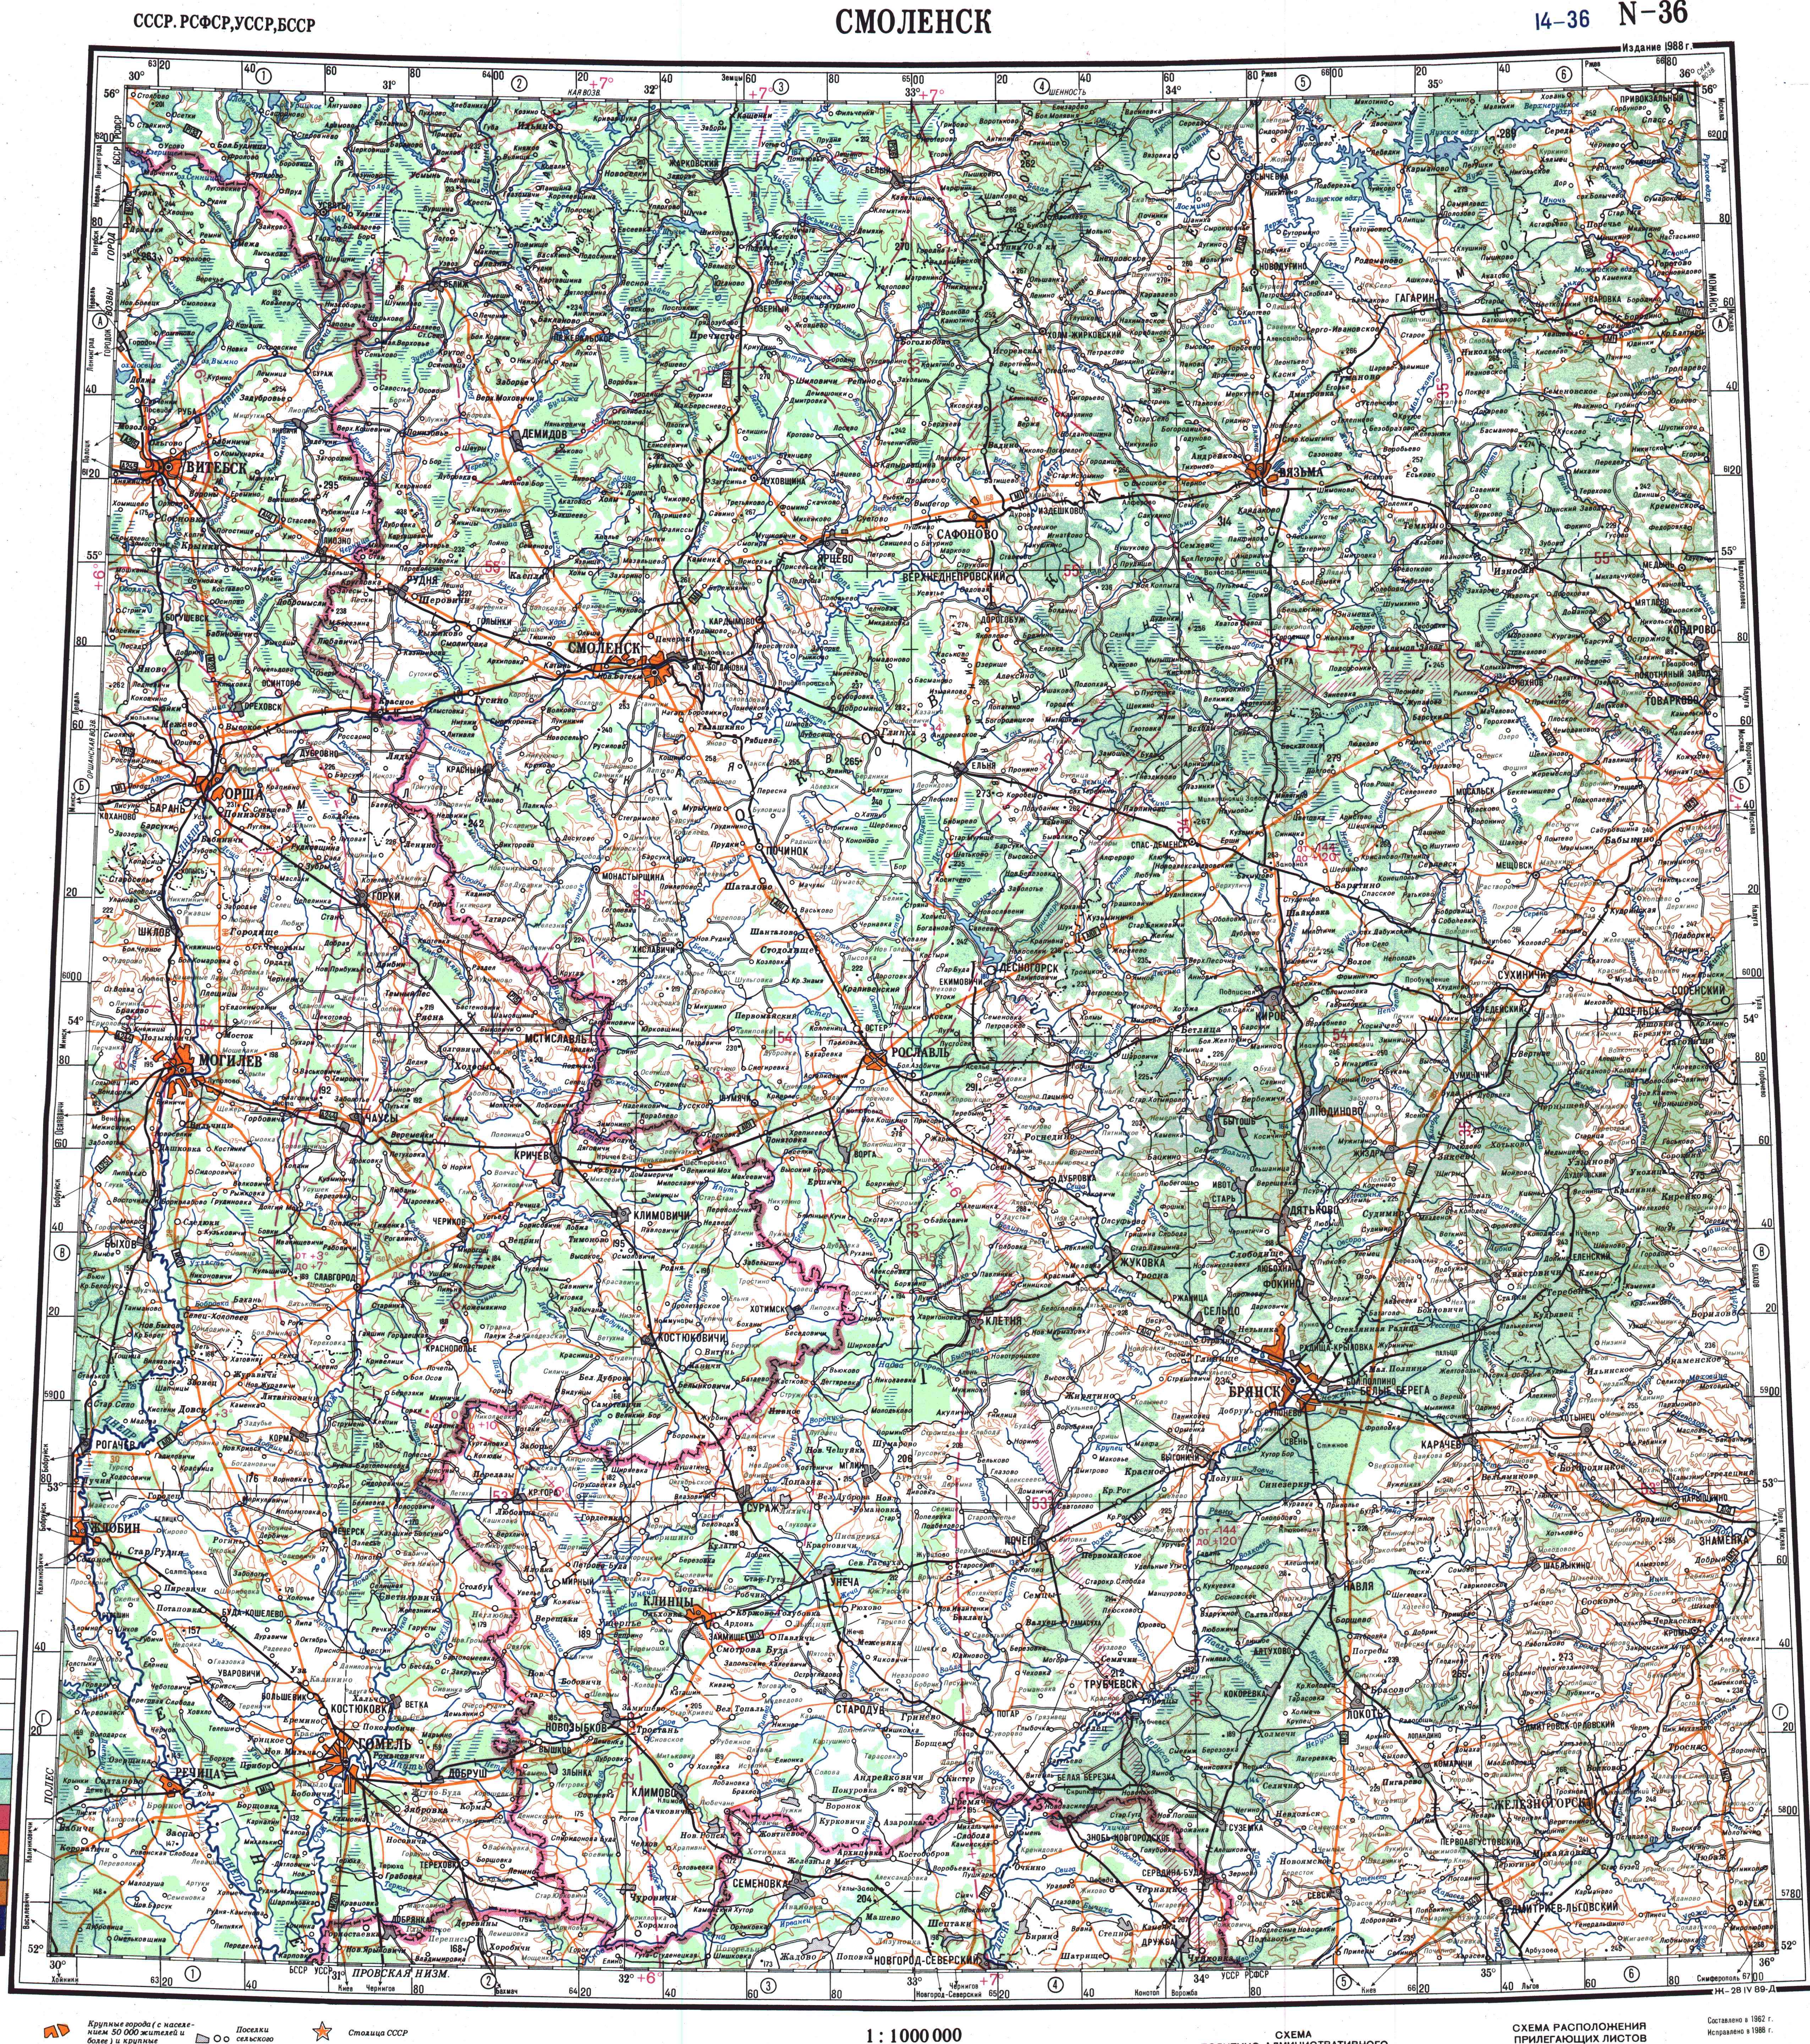 Топографические карты Генштаба / Карты листа N-36 (Смоленск) / Карта масштаба 1:1000000 (десятикилометровка)